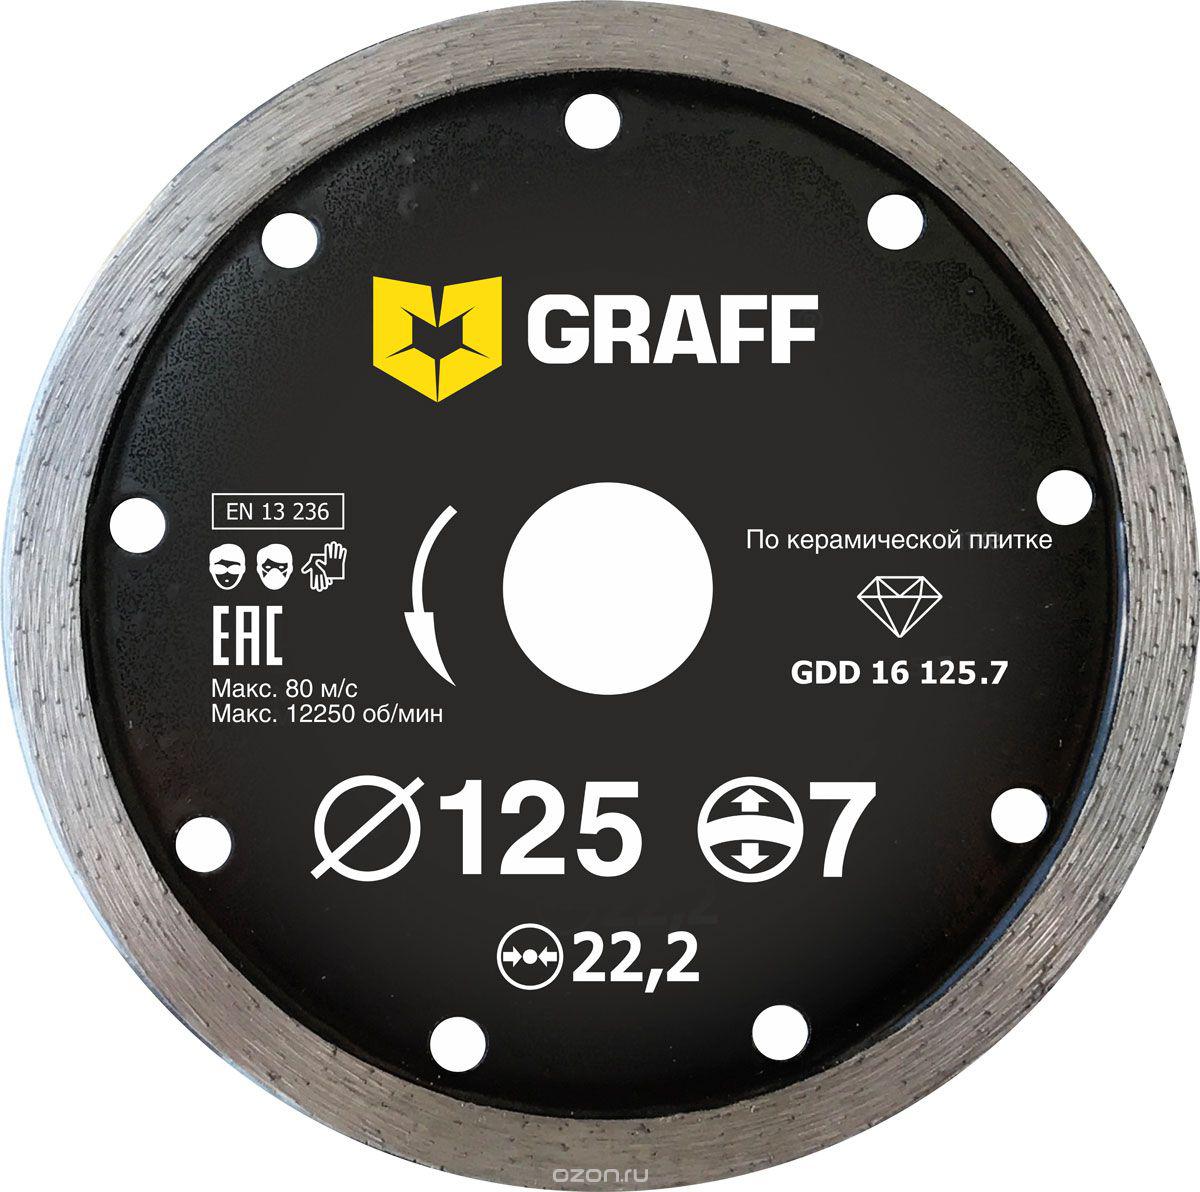 Диск отрезной алмазный GRAFF (GDD 16 125.7) Ф125х22мм по керамике диск алмазный 4 13 мм для заточки концевых фрез sdc4 13lx13